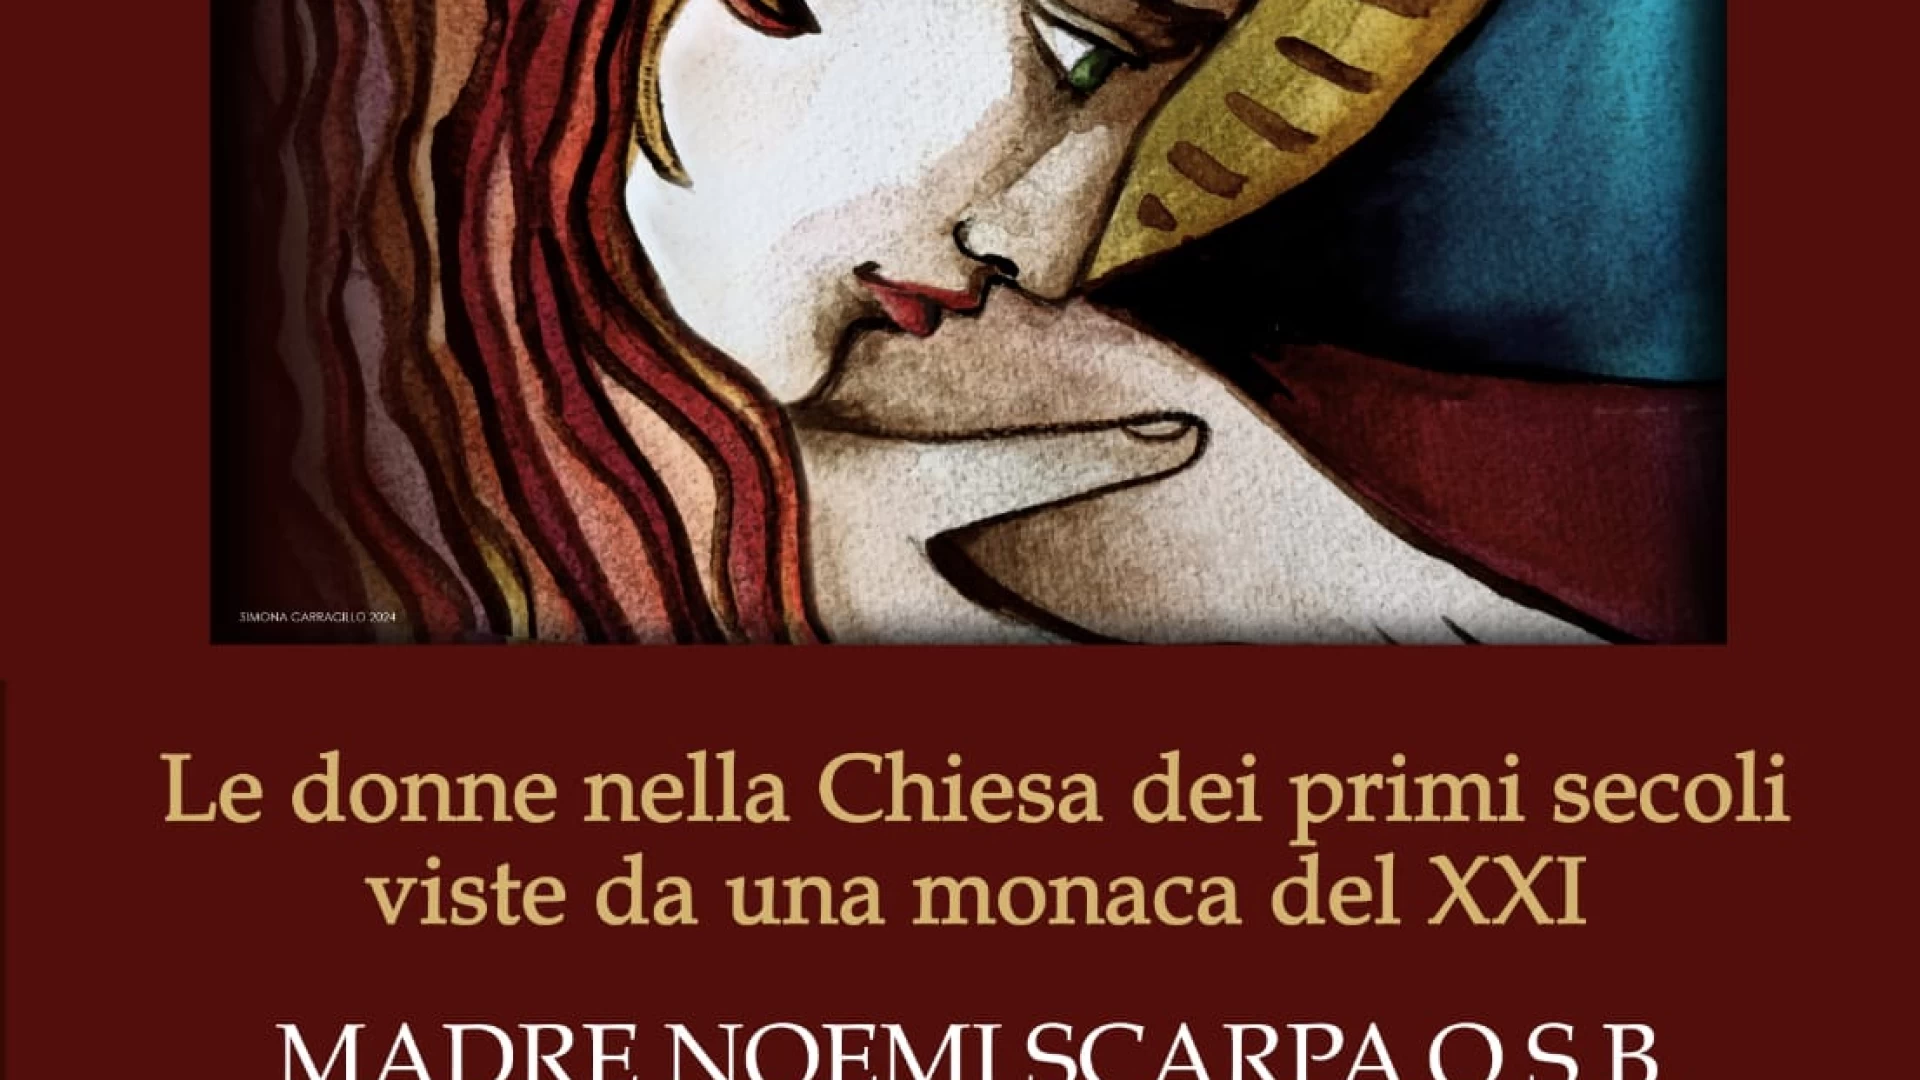 Le donne nella chiesa viste da una monaca. L'esperienza di Madre Noemi Scarpa. Il 28 aprile l'incontro presso l'Abbazia di San Vincenzo al Volturno.